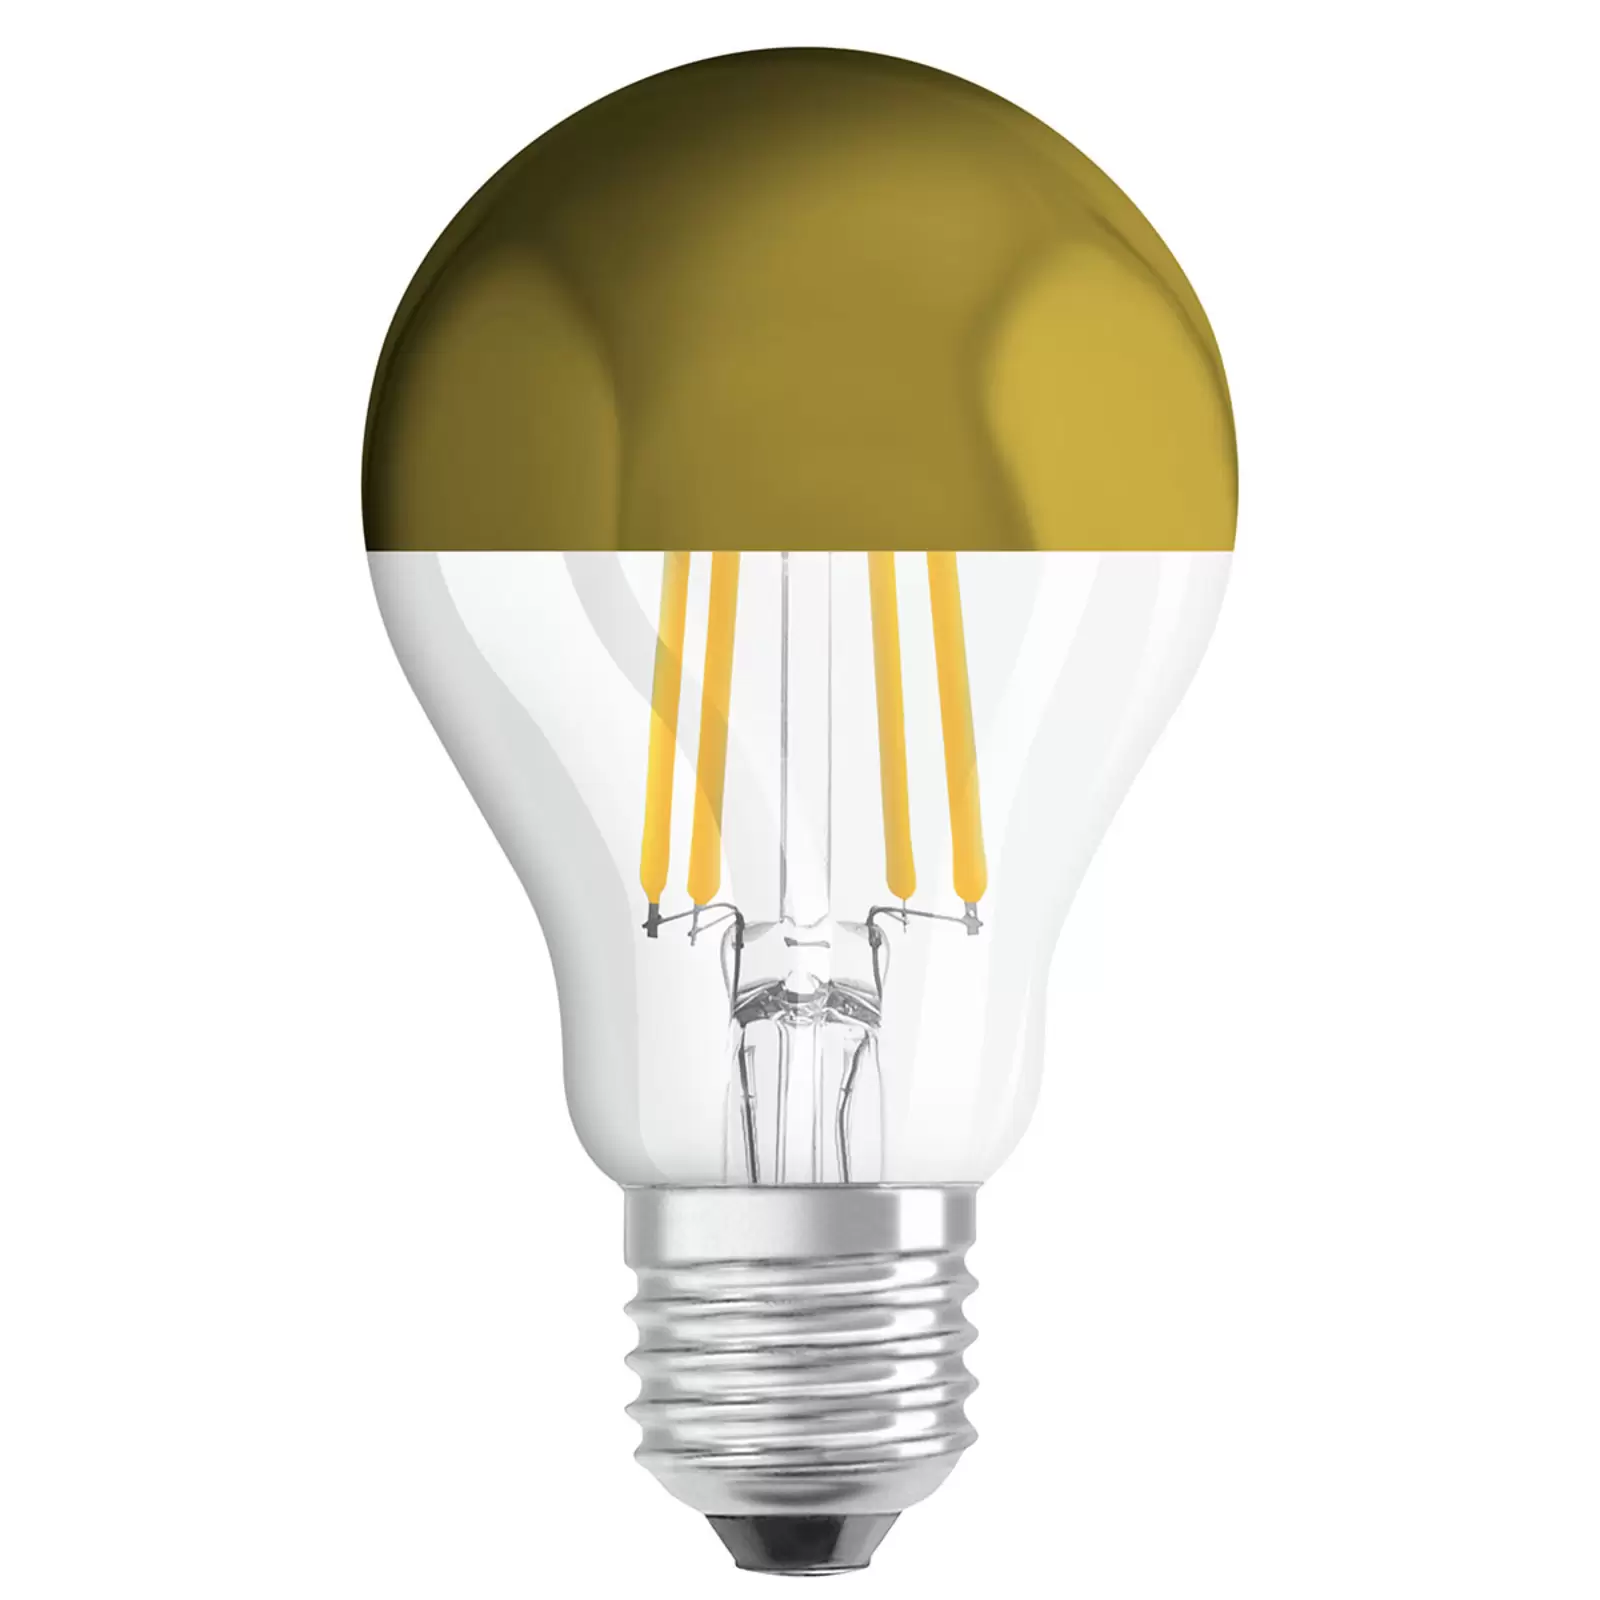 Ampoule LED effet miroir doré E27 4W